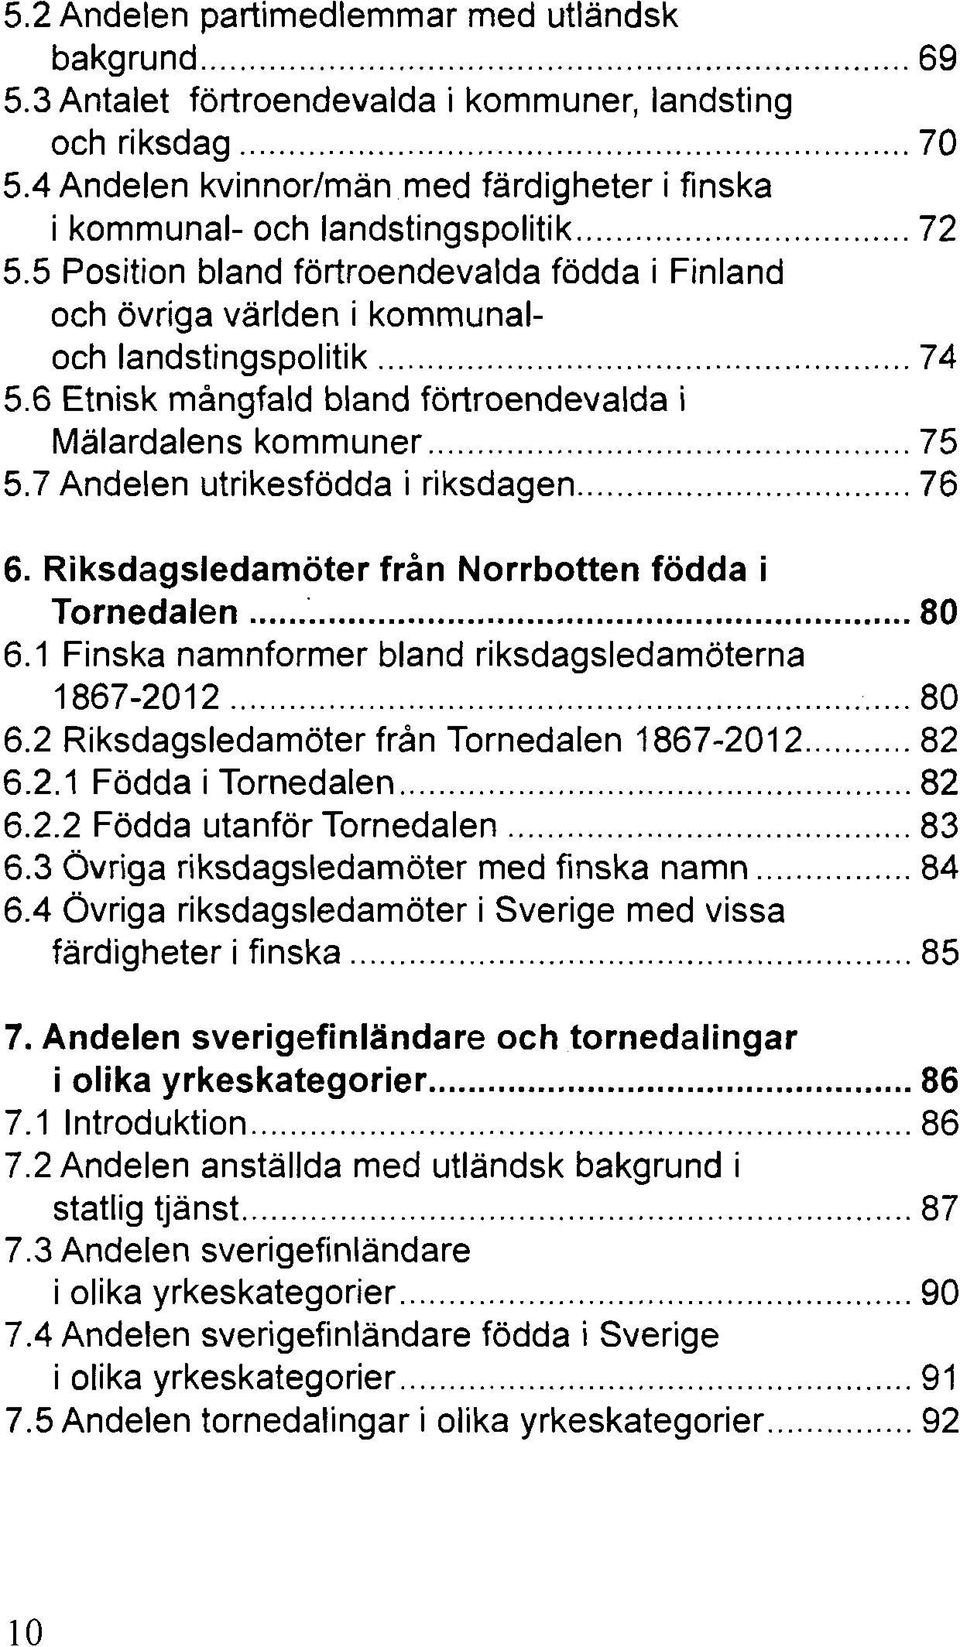 6 Etnisk mångfald bland förtroendevalda i Mälardalens kommuner 75 5.7 Andelen utrikesfödda i riksdagen 76 6. Riksdagsledamöter från Norrbotten födda i Tornedalen 80 6.